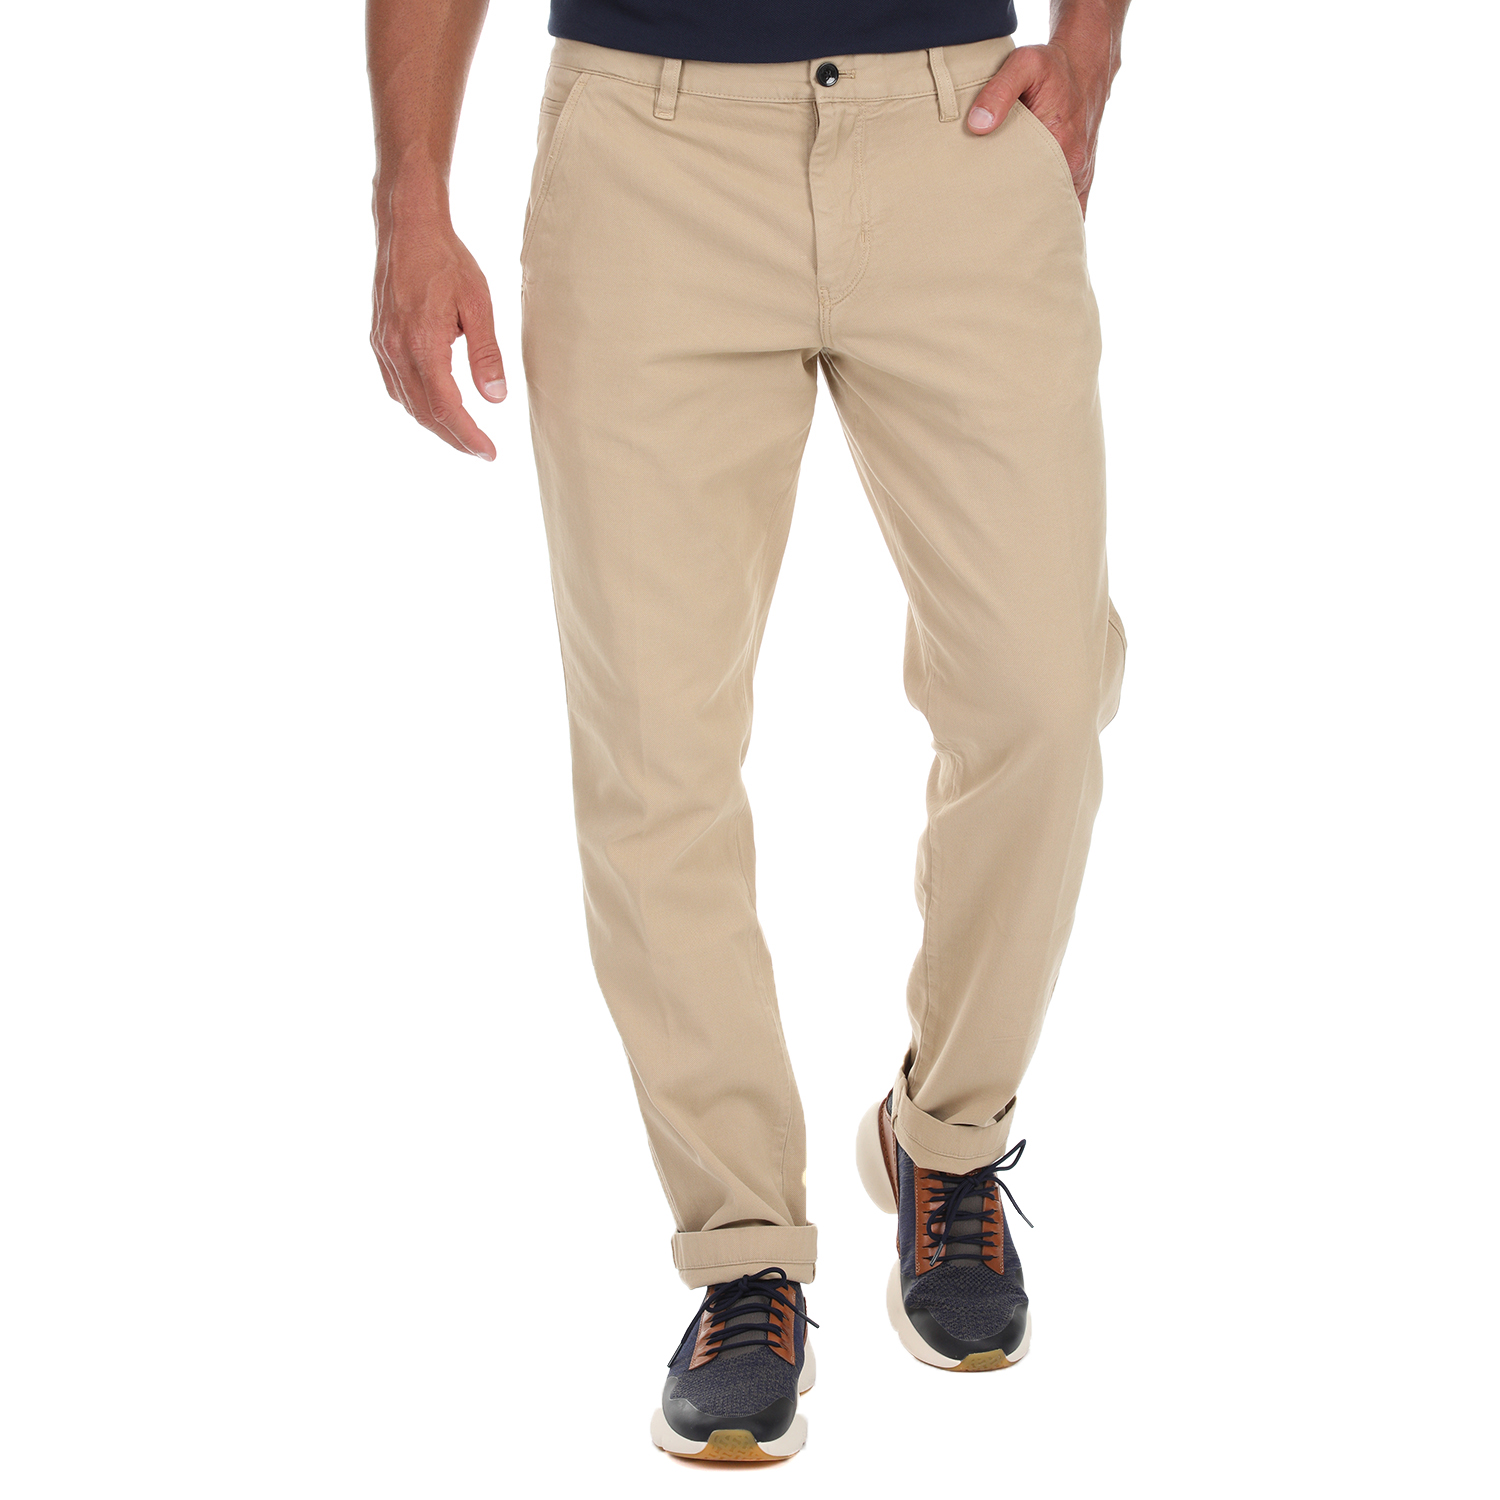 Ανδρικά/Ρούχα/Παντελόνια/Chinos CK - Ανδρικό casual παντελόνι CK μπεζ